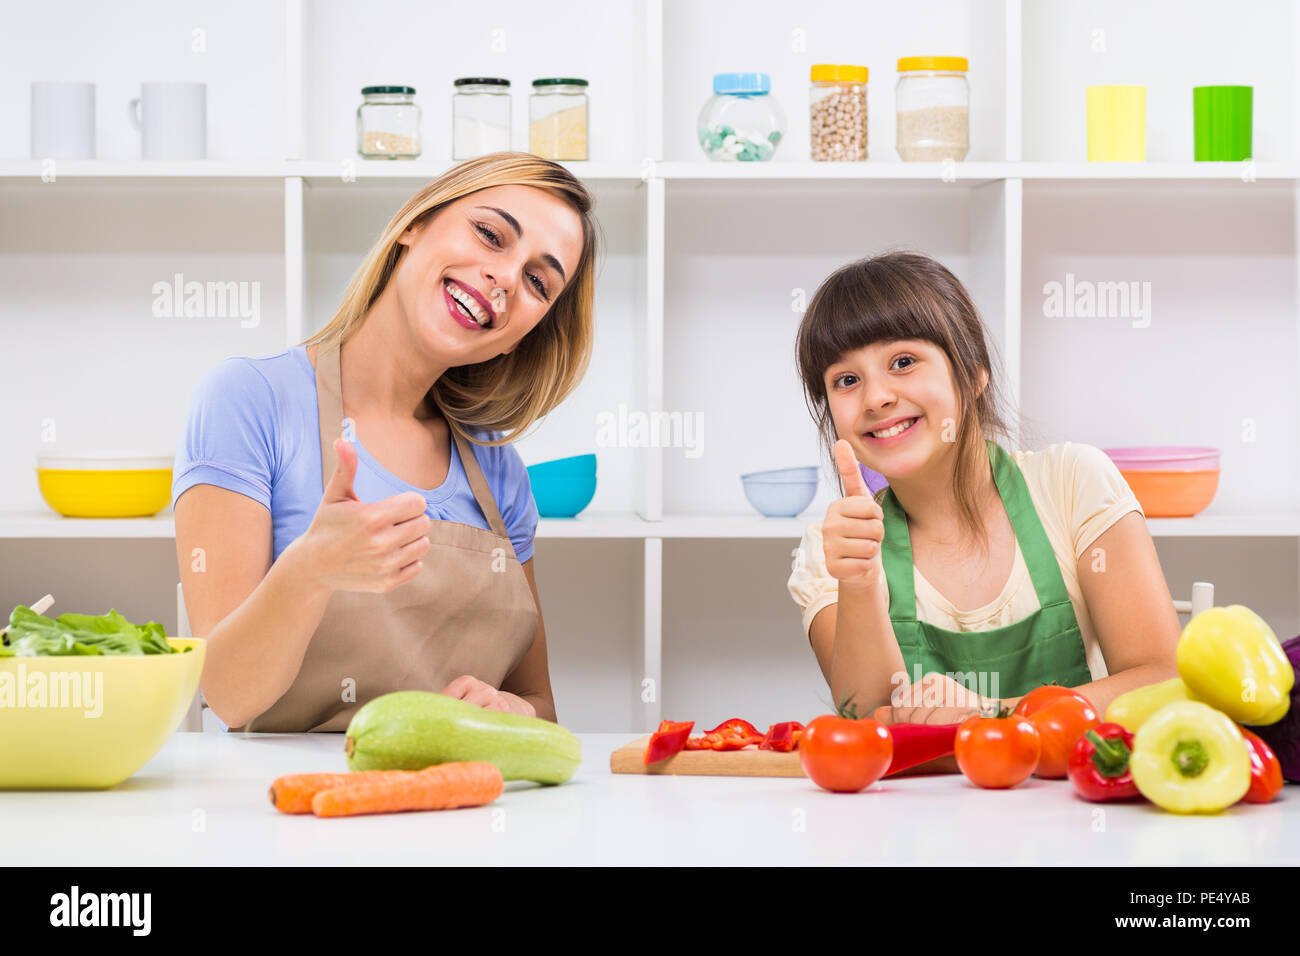 Glückliche Mutter und ihrer Tochter, Daumen hoch, während Sie genießen Sie gesunde Mahlzeit zusammen, an ihrem Haus. Stockfoto